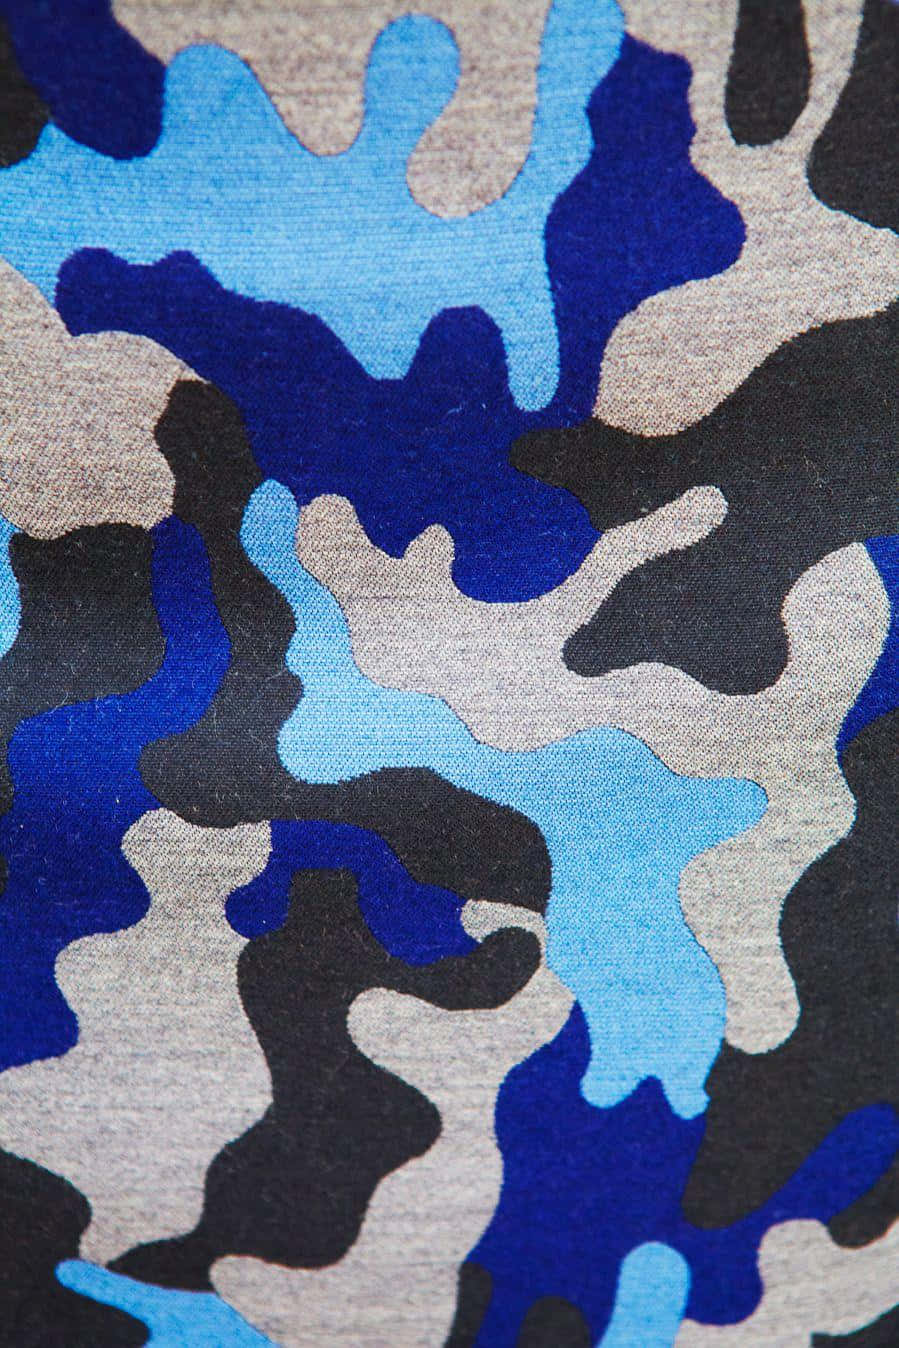 Ögonfallandeblå Kamouflagemönster Sammanför Klassisk Stil Och Moderna Trender För En Spännande Ny Look På Datorskärmen Eller Mobilen. Wallpaper